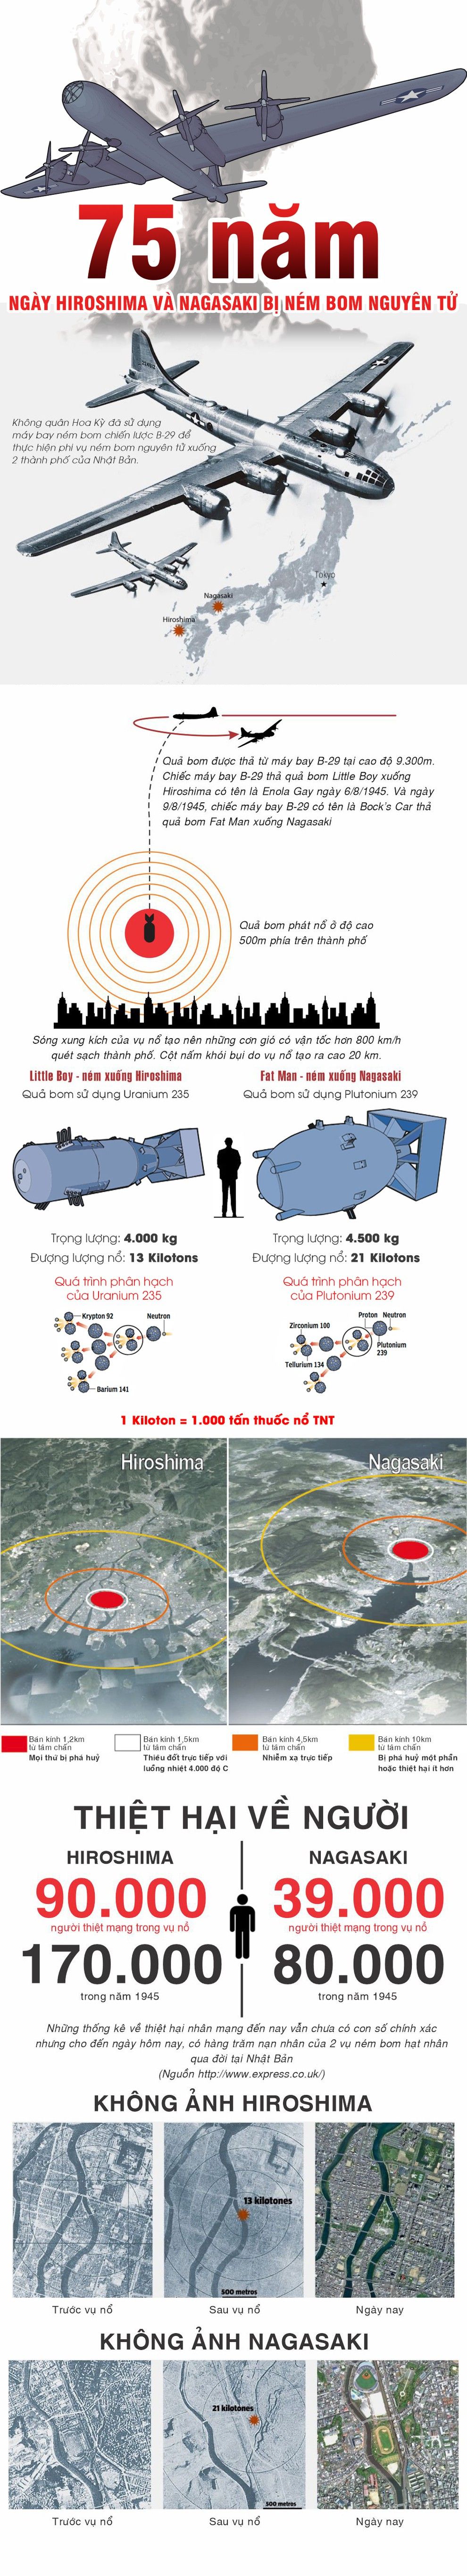 0040 infographic hiroshima uozz